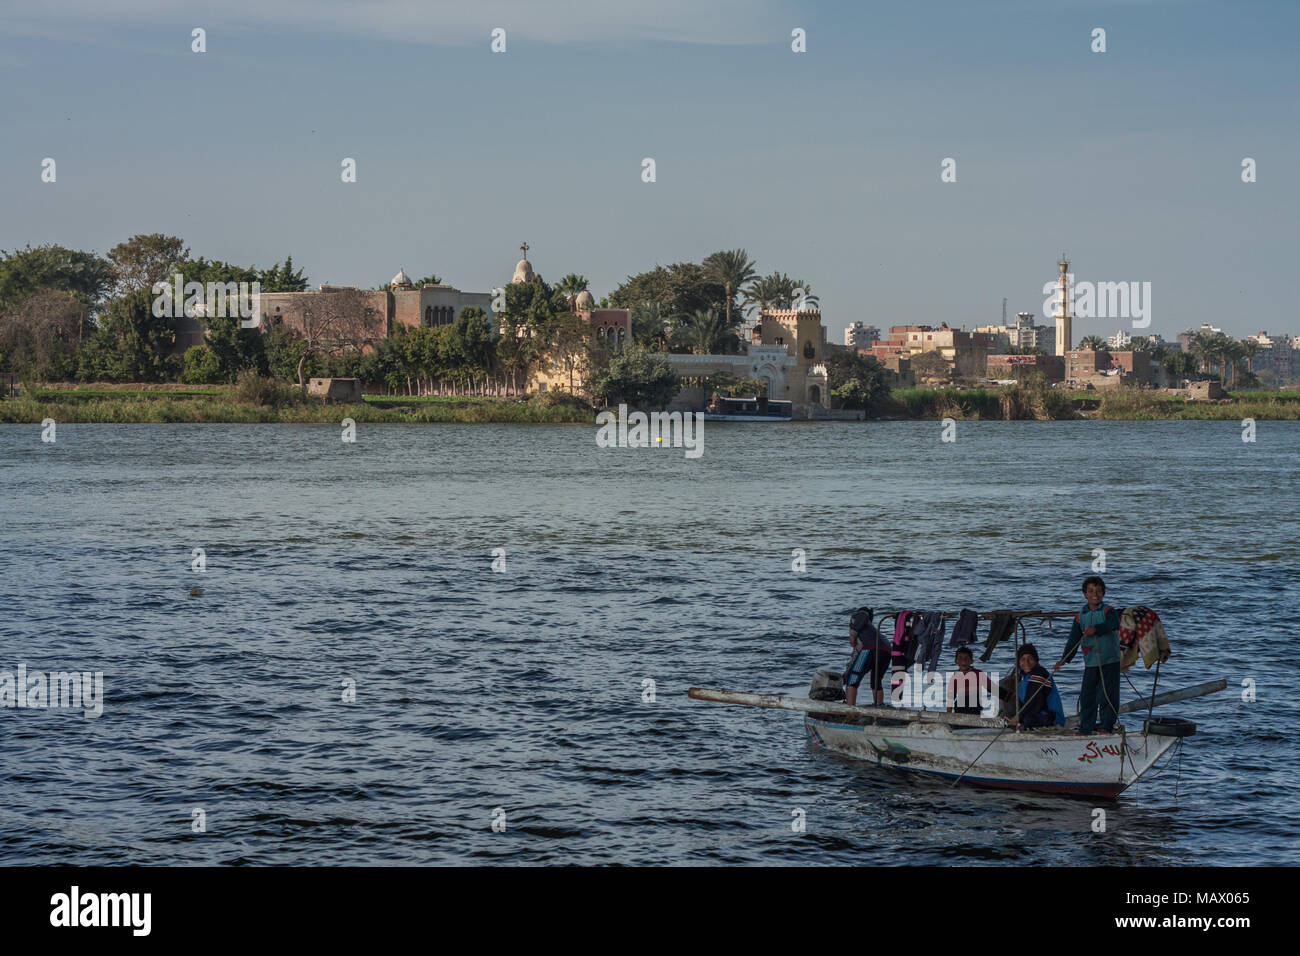 Kairo, Ägypten, 11. Februar 2012: ägyptischen Familie in einem kleinen Boot auf dem Nil in der Mitte von Kairo Stockfoto